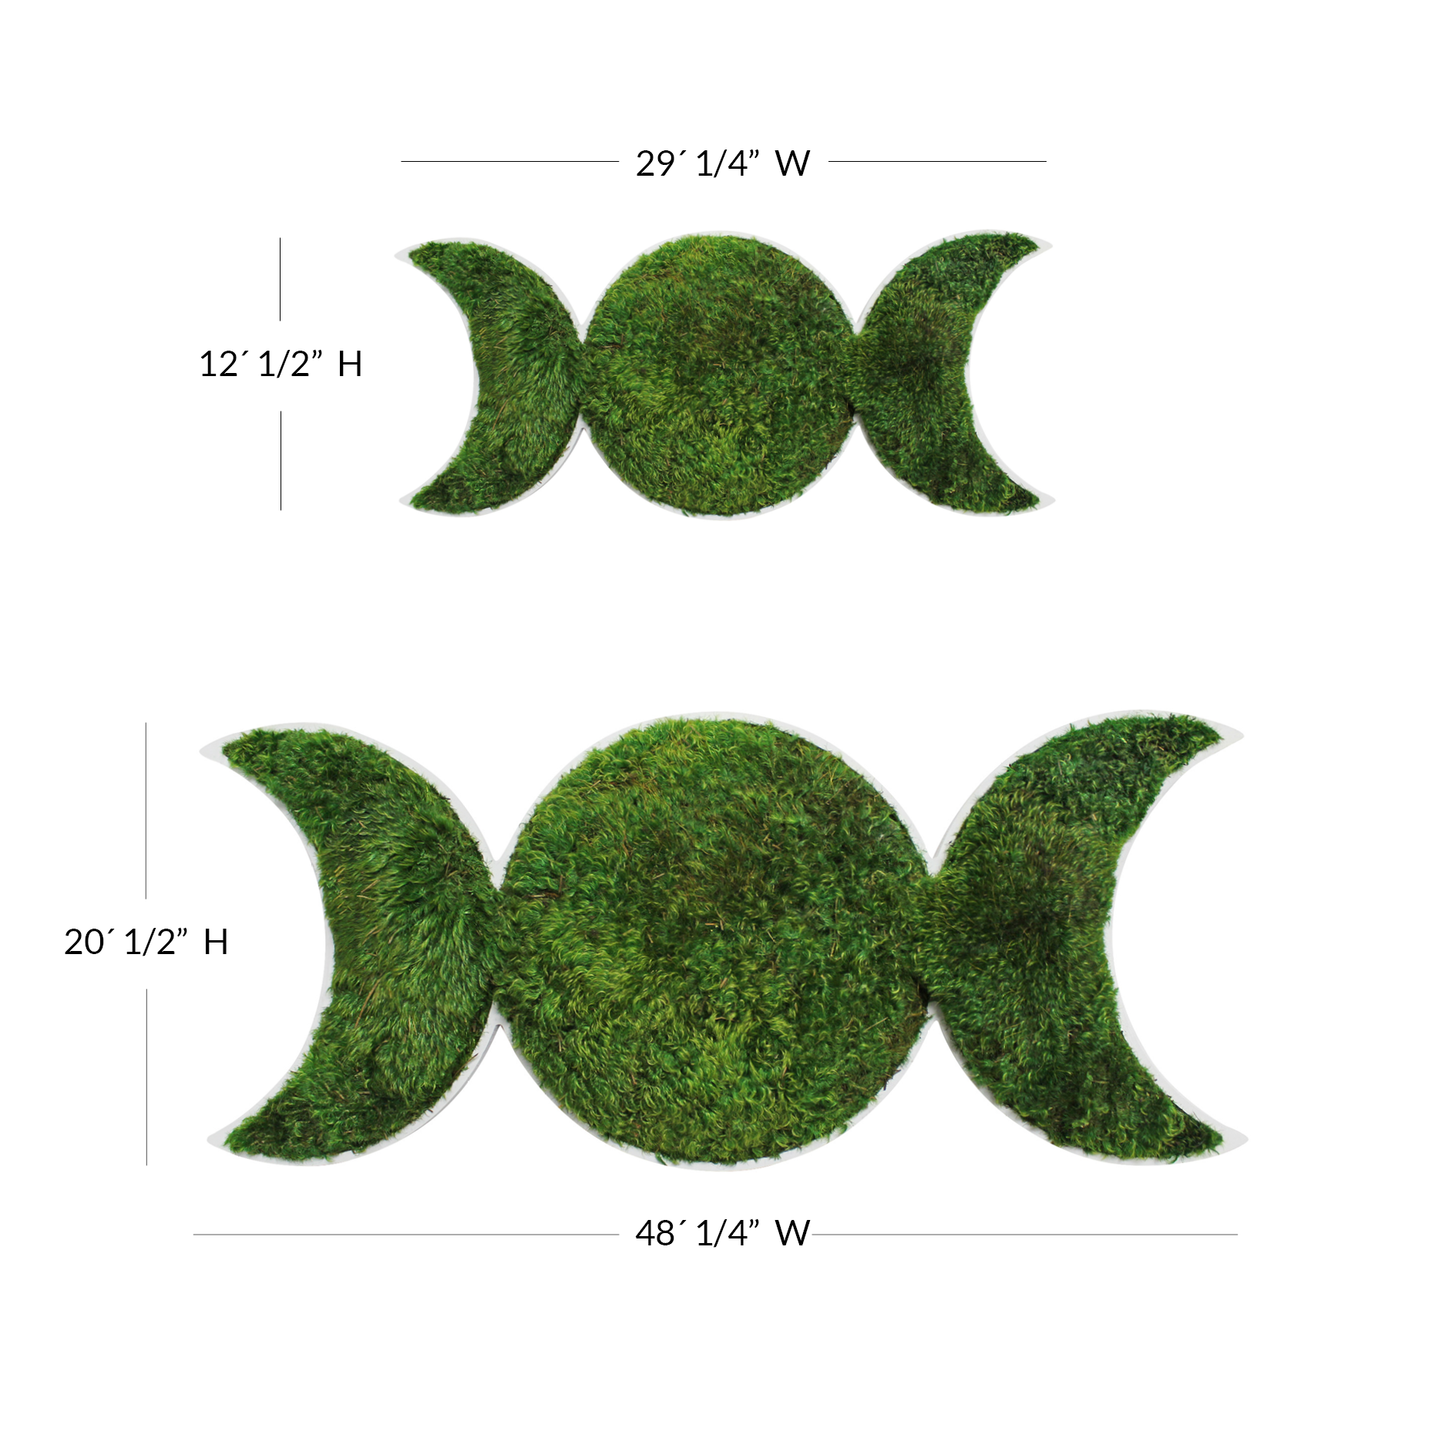 Lunar Eclipse - Moss Wall Design